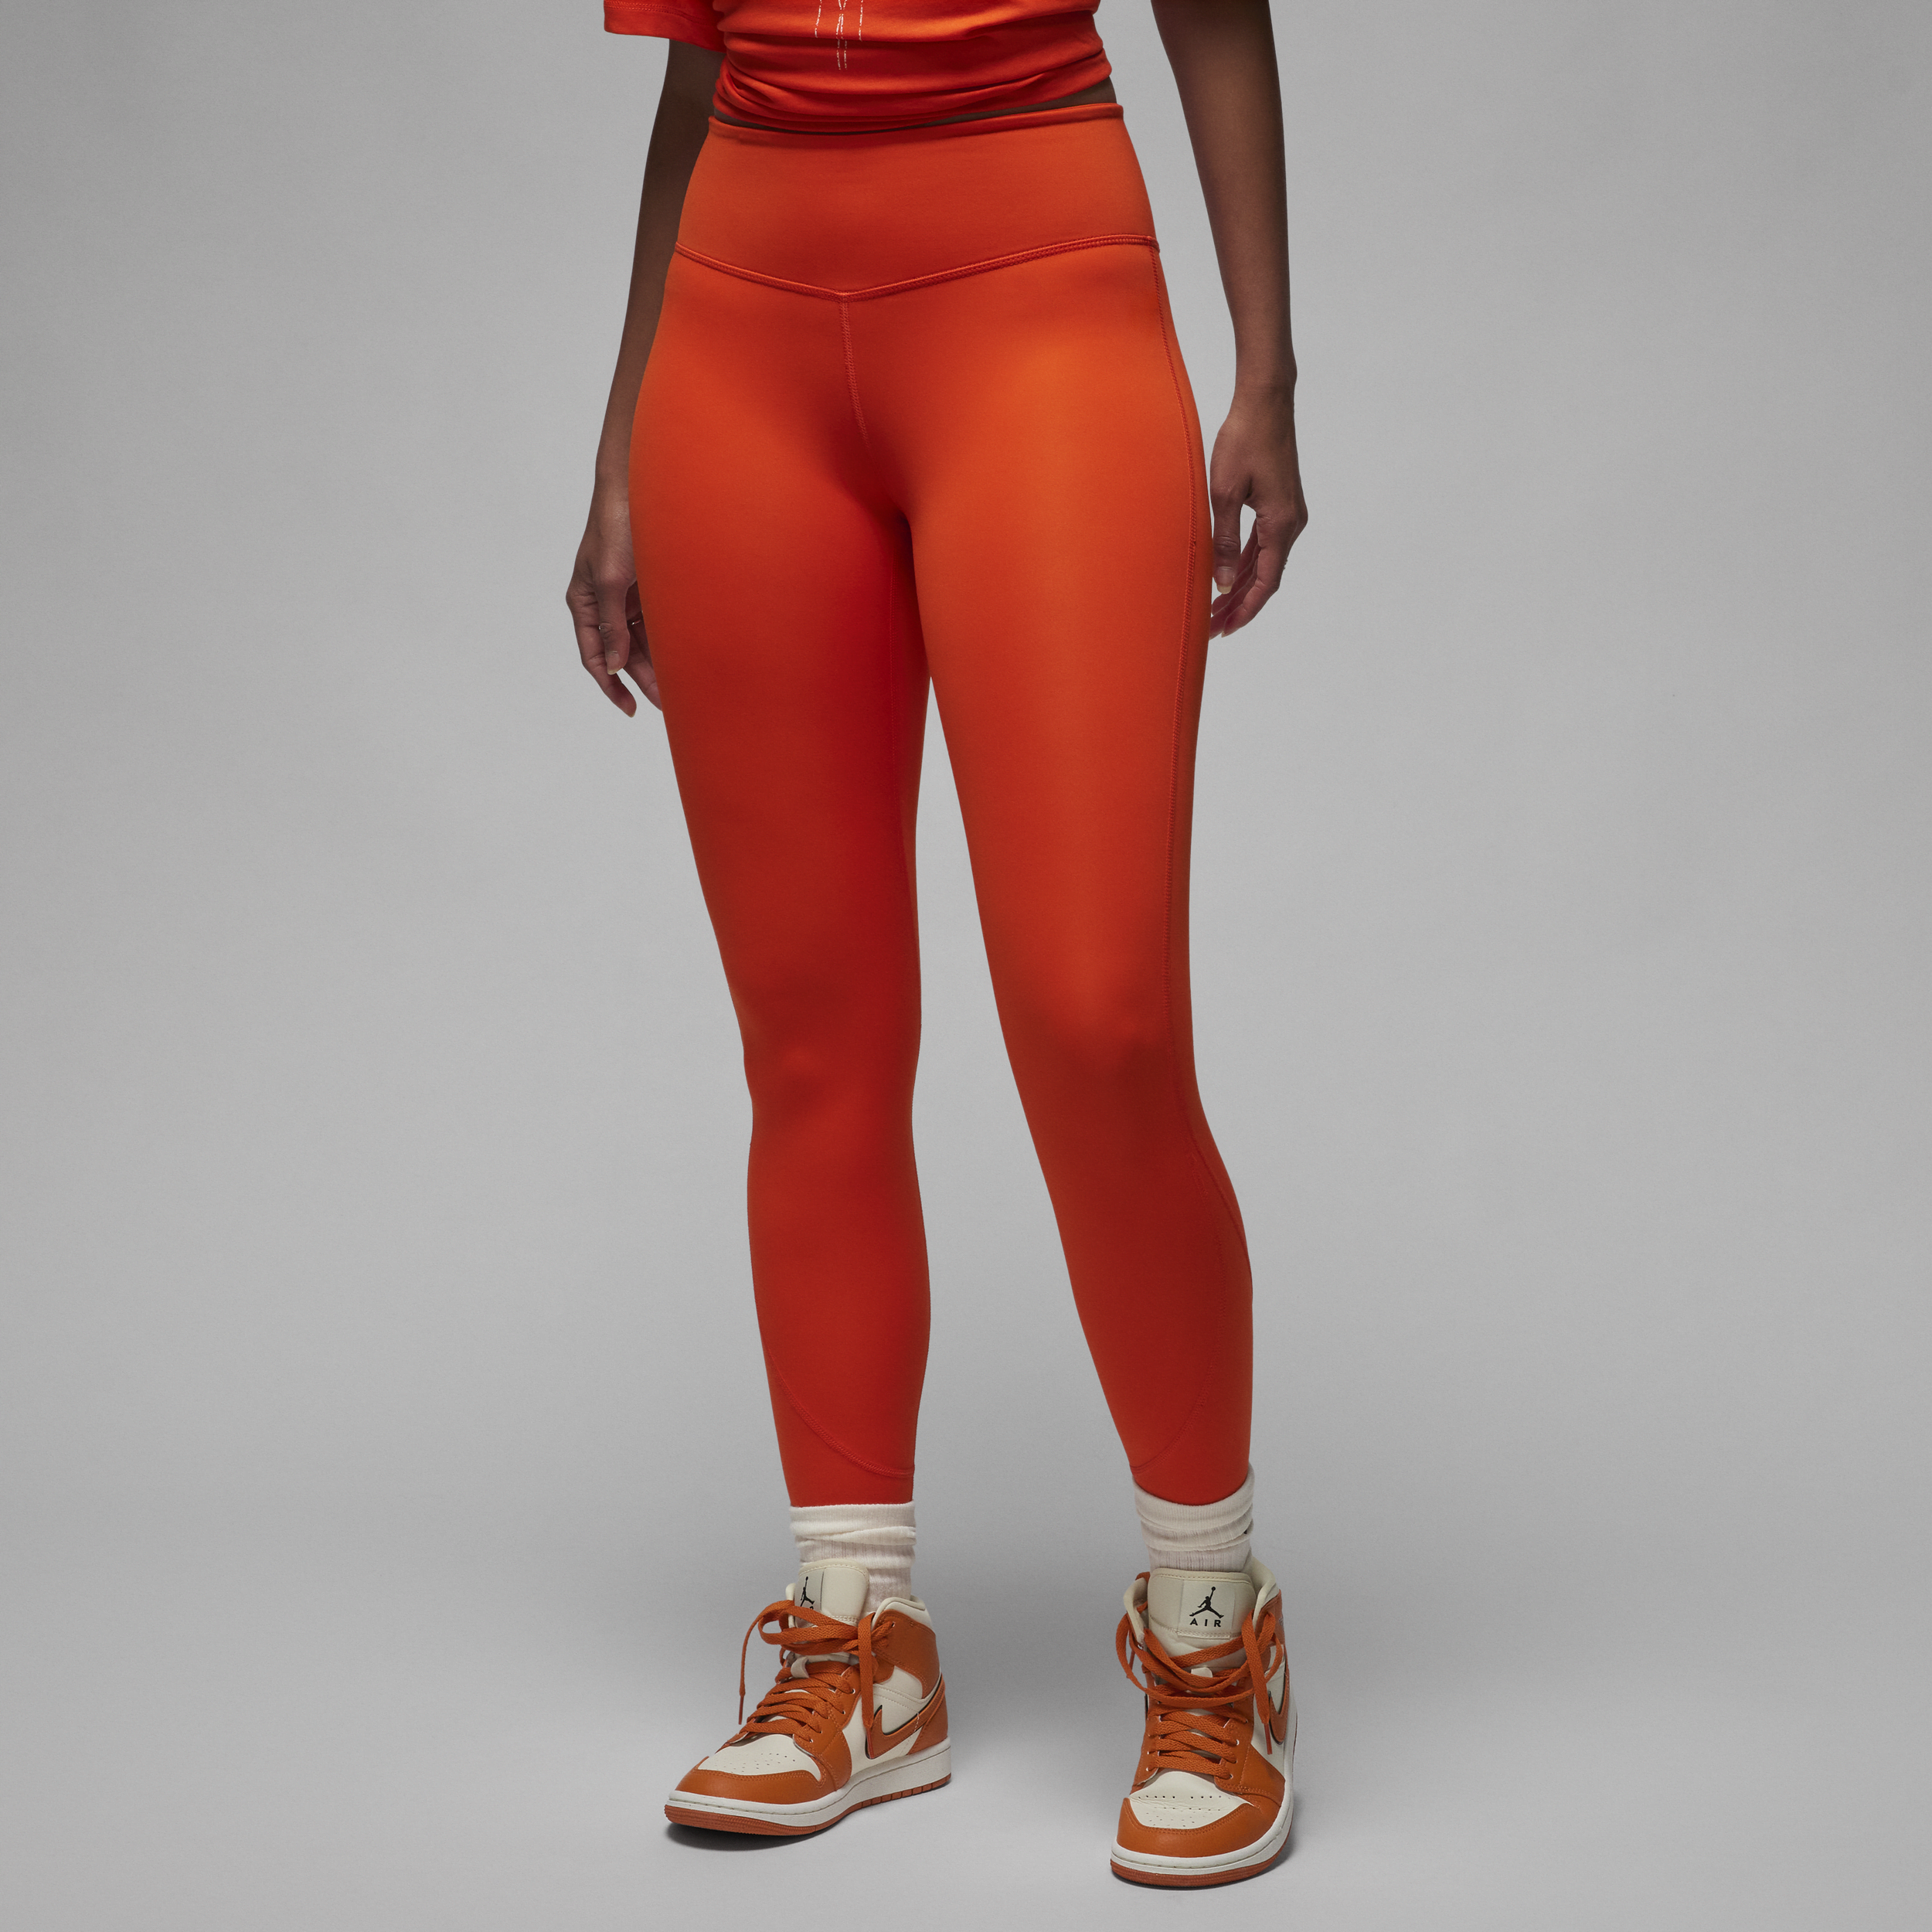 Jordan Sport Leggings - Mujer - Rojo